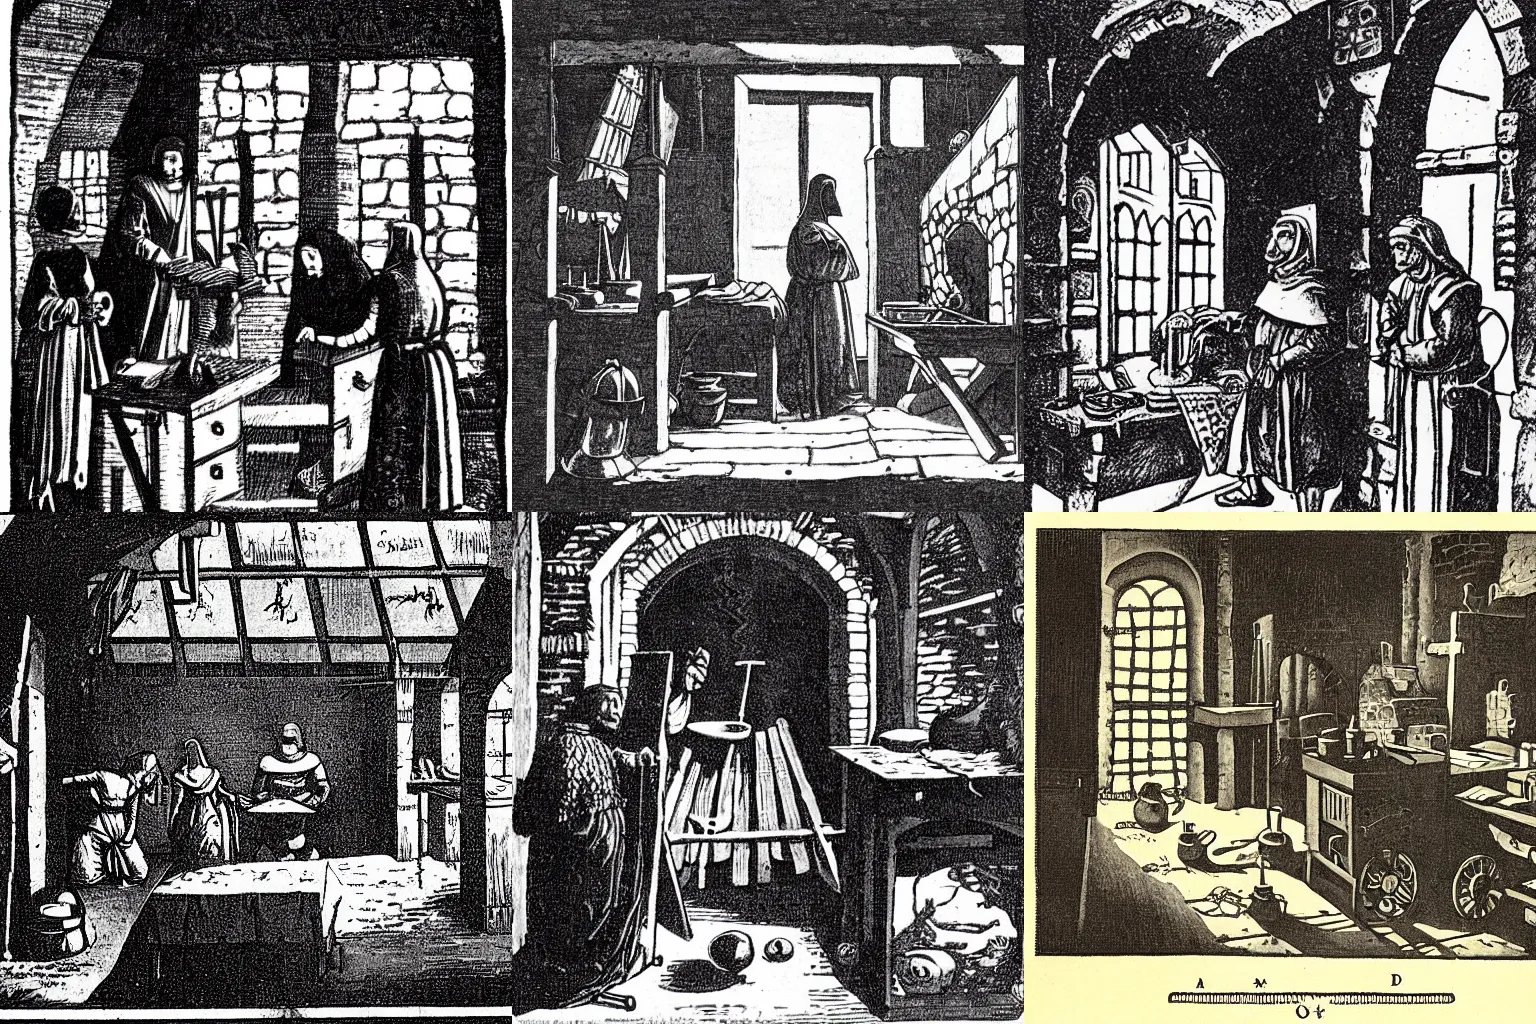 Prompt: a medieval workshop. dark, secretive, illustration, 1 9 2 0.